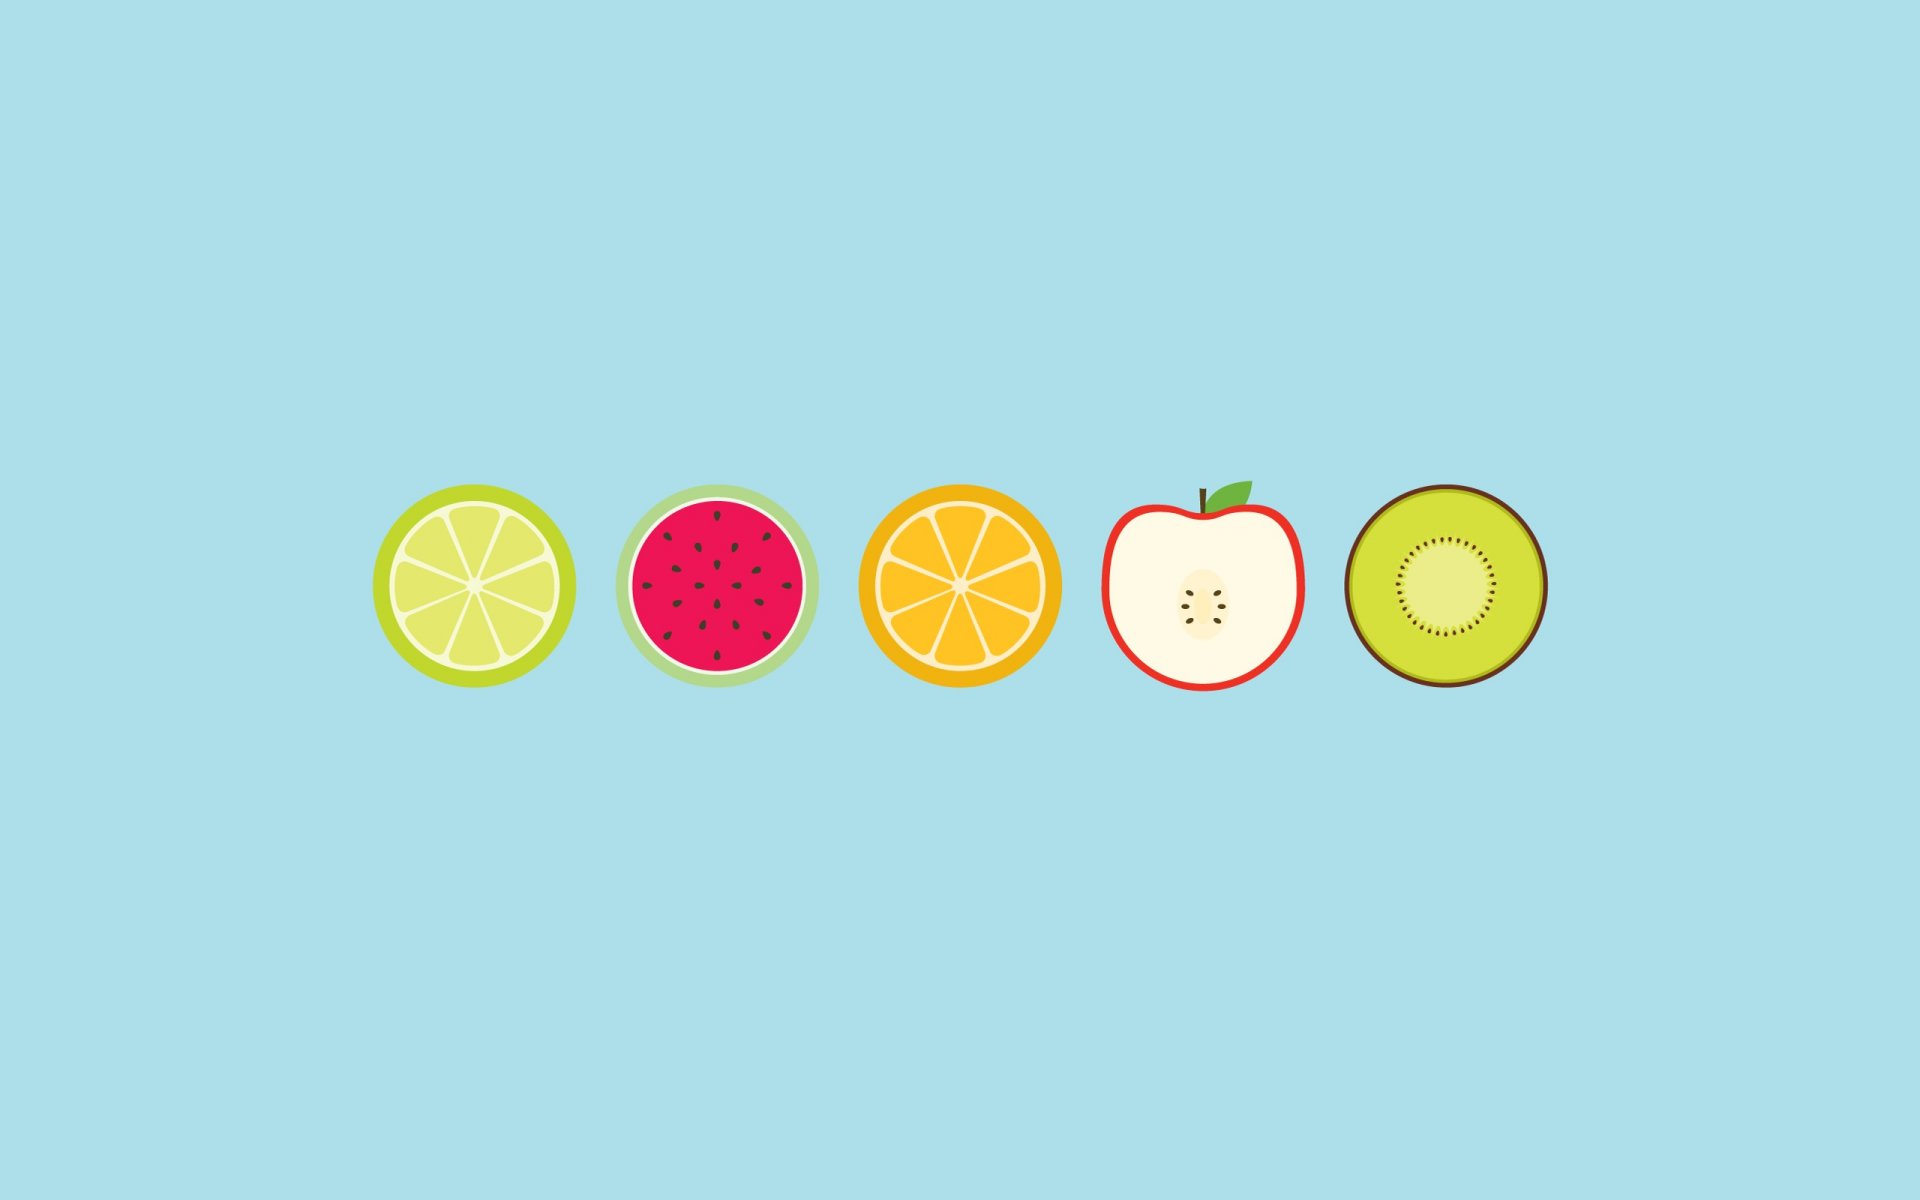 Обои с тегом:фрукты, круги, апельсин, лайм, яблоко, арбуз, киви.